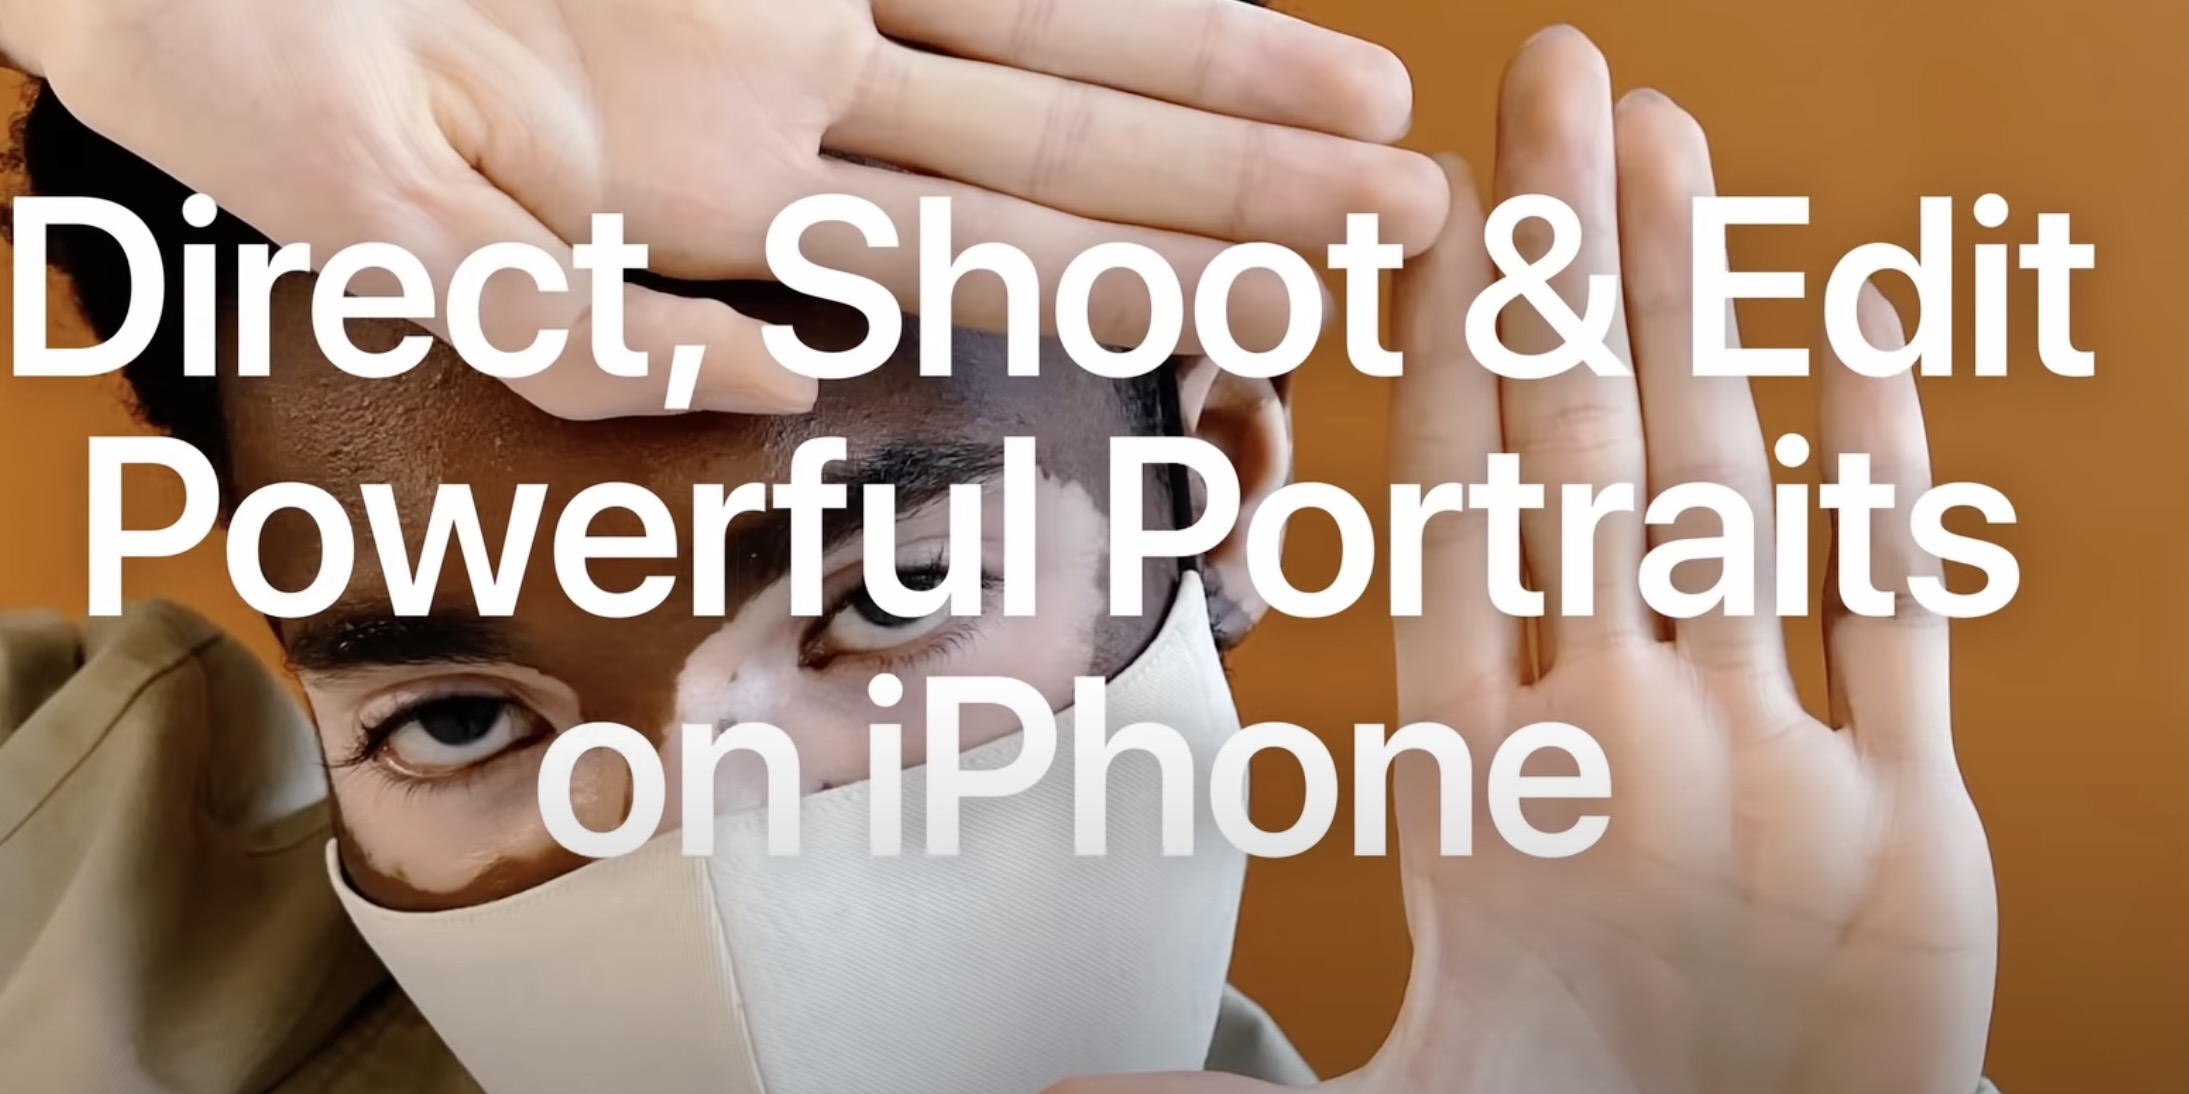 instal the last version for apple PT Portrait Studio 6.0.1